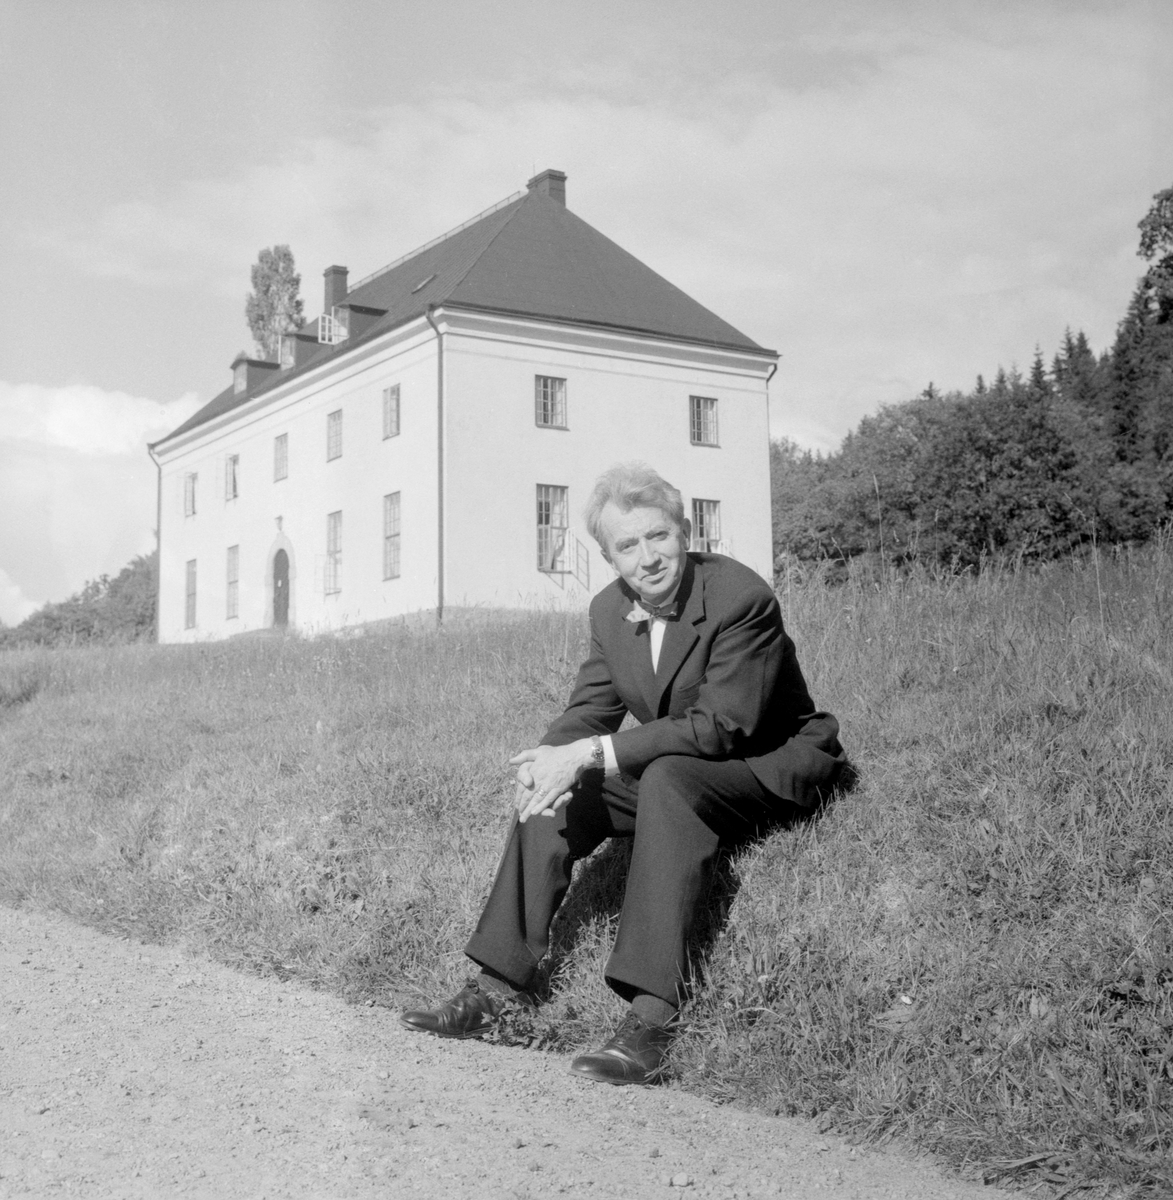 1961 tilldelades övralidspriset litteraturvetaren Gunnar Axberger. Här ses han i en av dagens lugnare stunder med Heidenstams Övralid som fond.